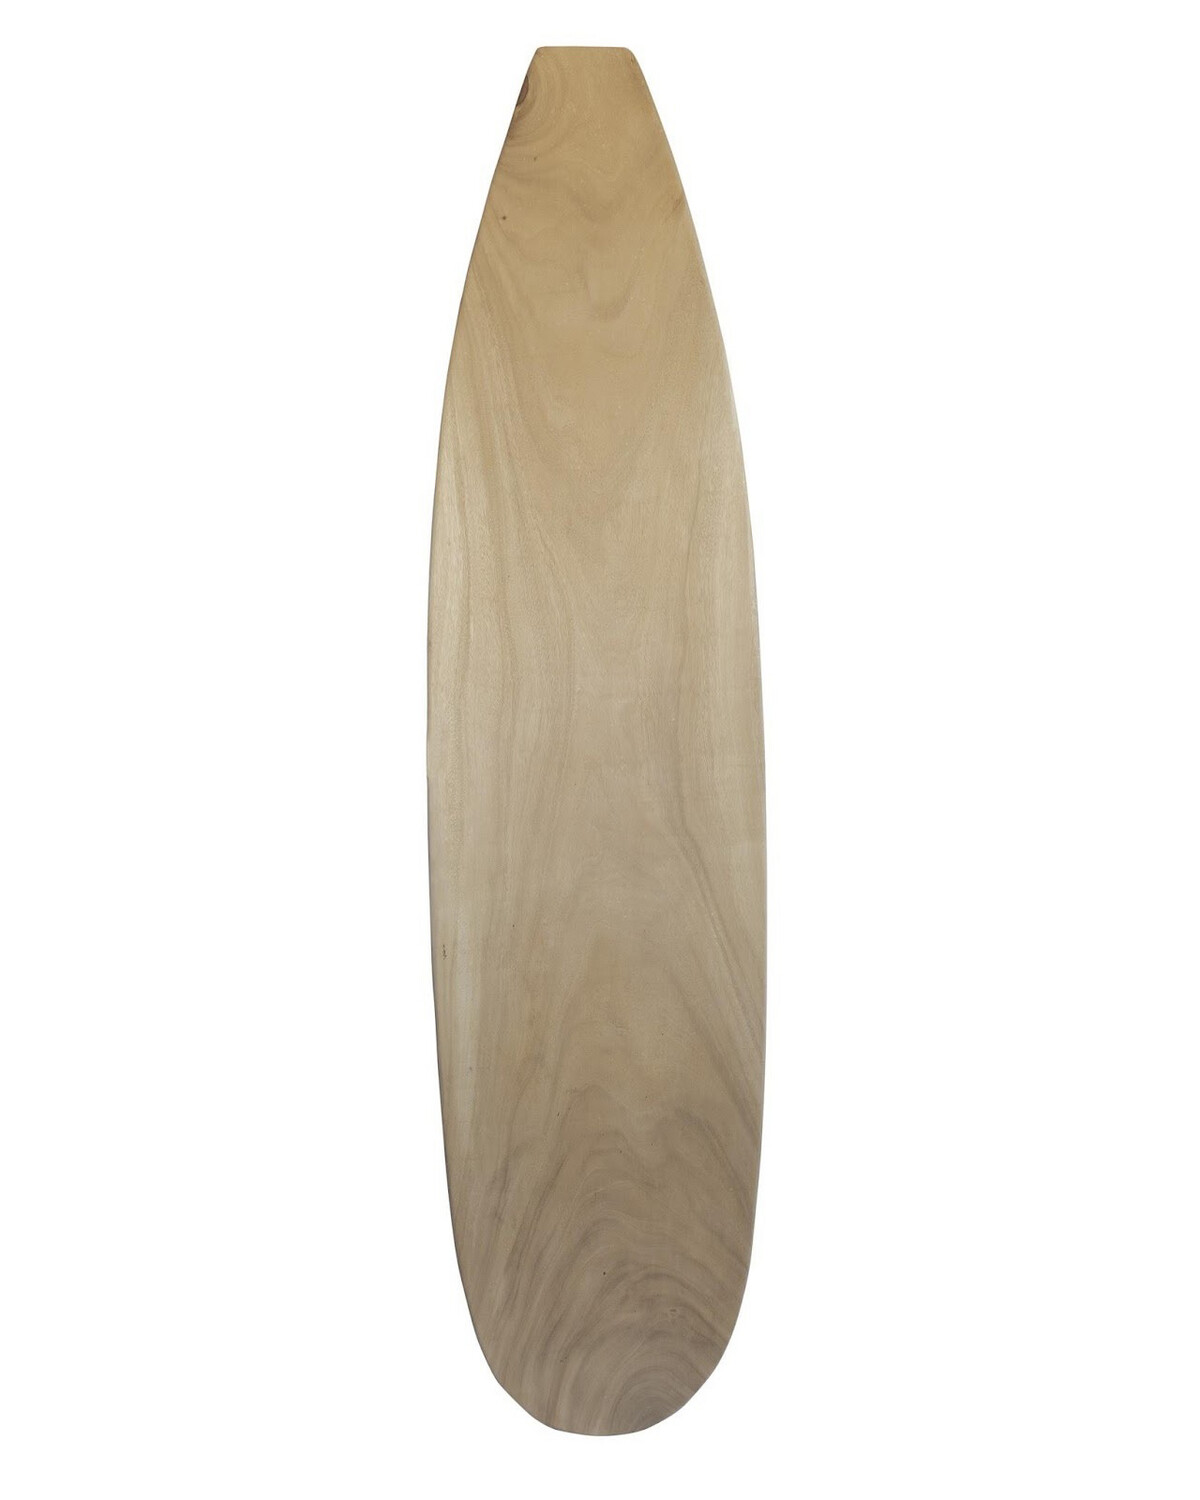 Surfboard 5 (180cm)